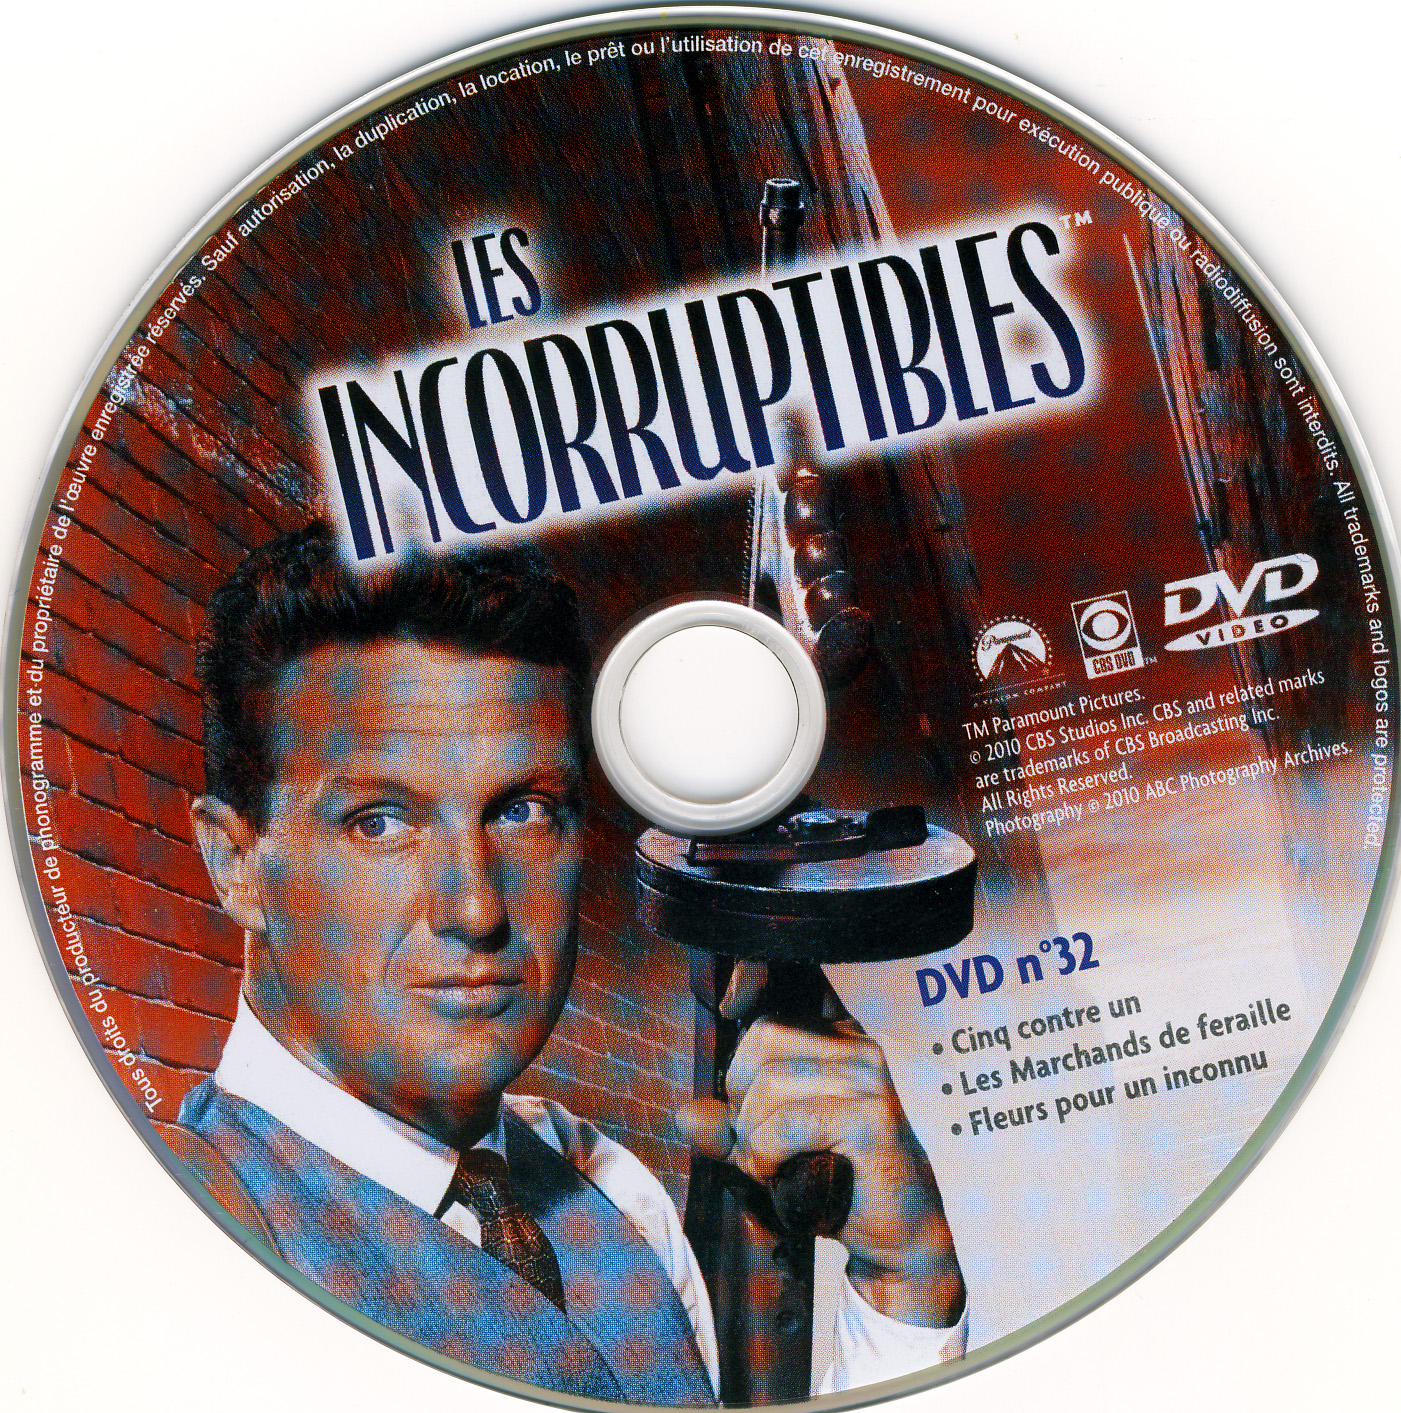 Les incorruptibles intgrale DVD 32 stick